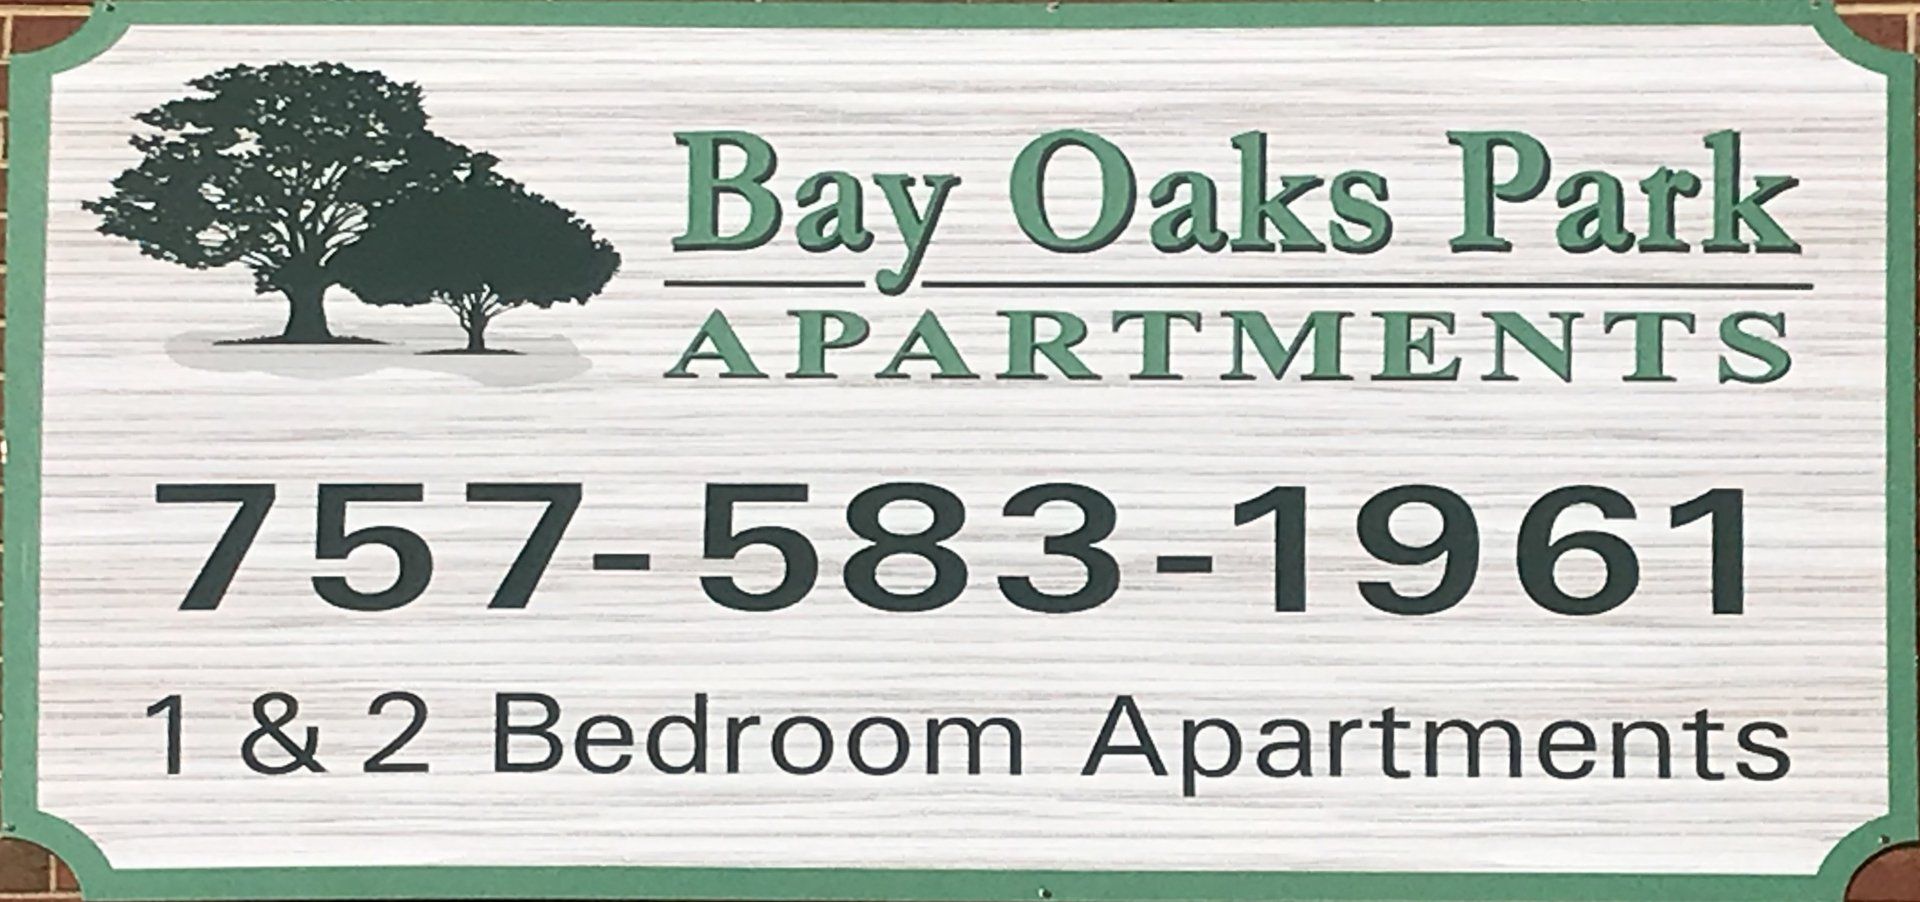 Bay Oaks Park Apartments